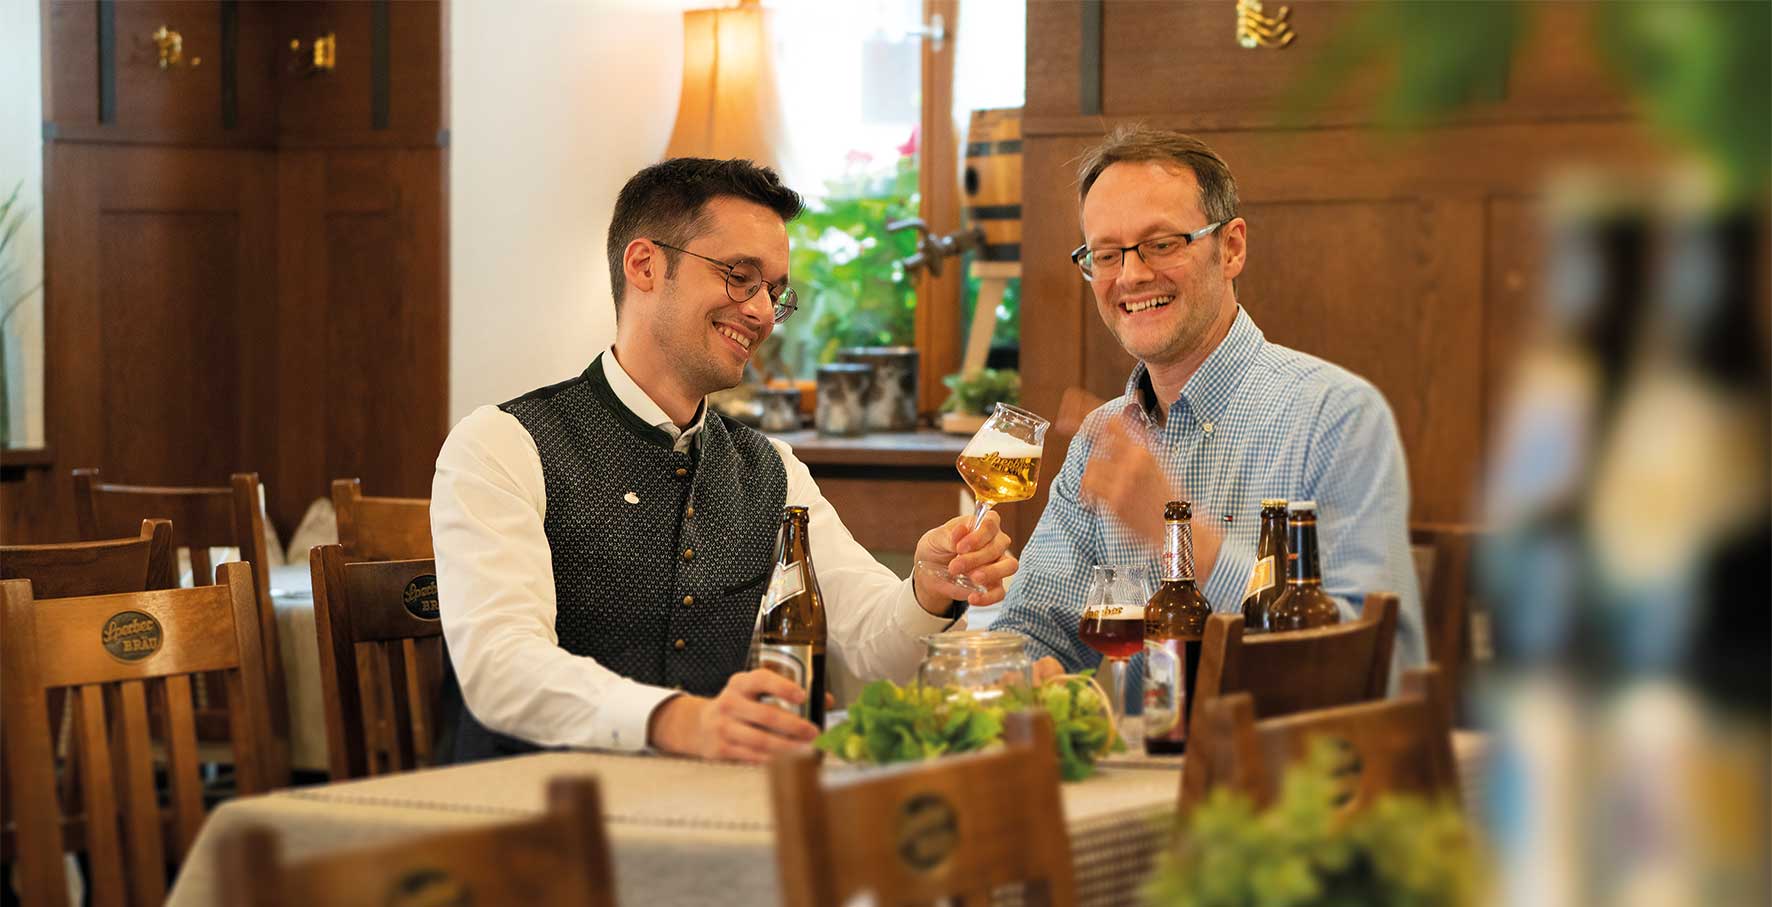 Foto von Michael und Christian Sperber, die mit Sperber-Bräu eine eigene Brauerei betreiben. Sie betrachten Bier in einem Bierglas und wissen, dass Bier ein großer Genuss ist dank vieler Aromen.